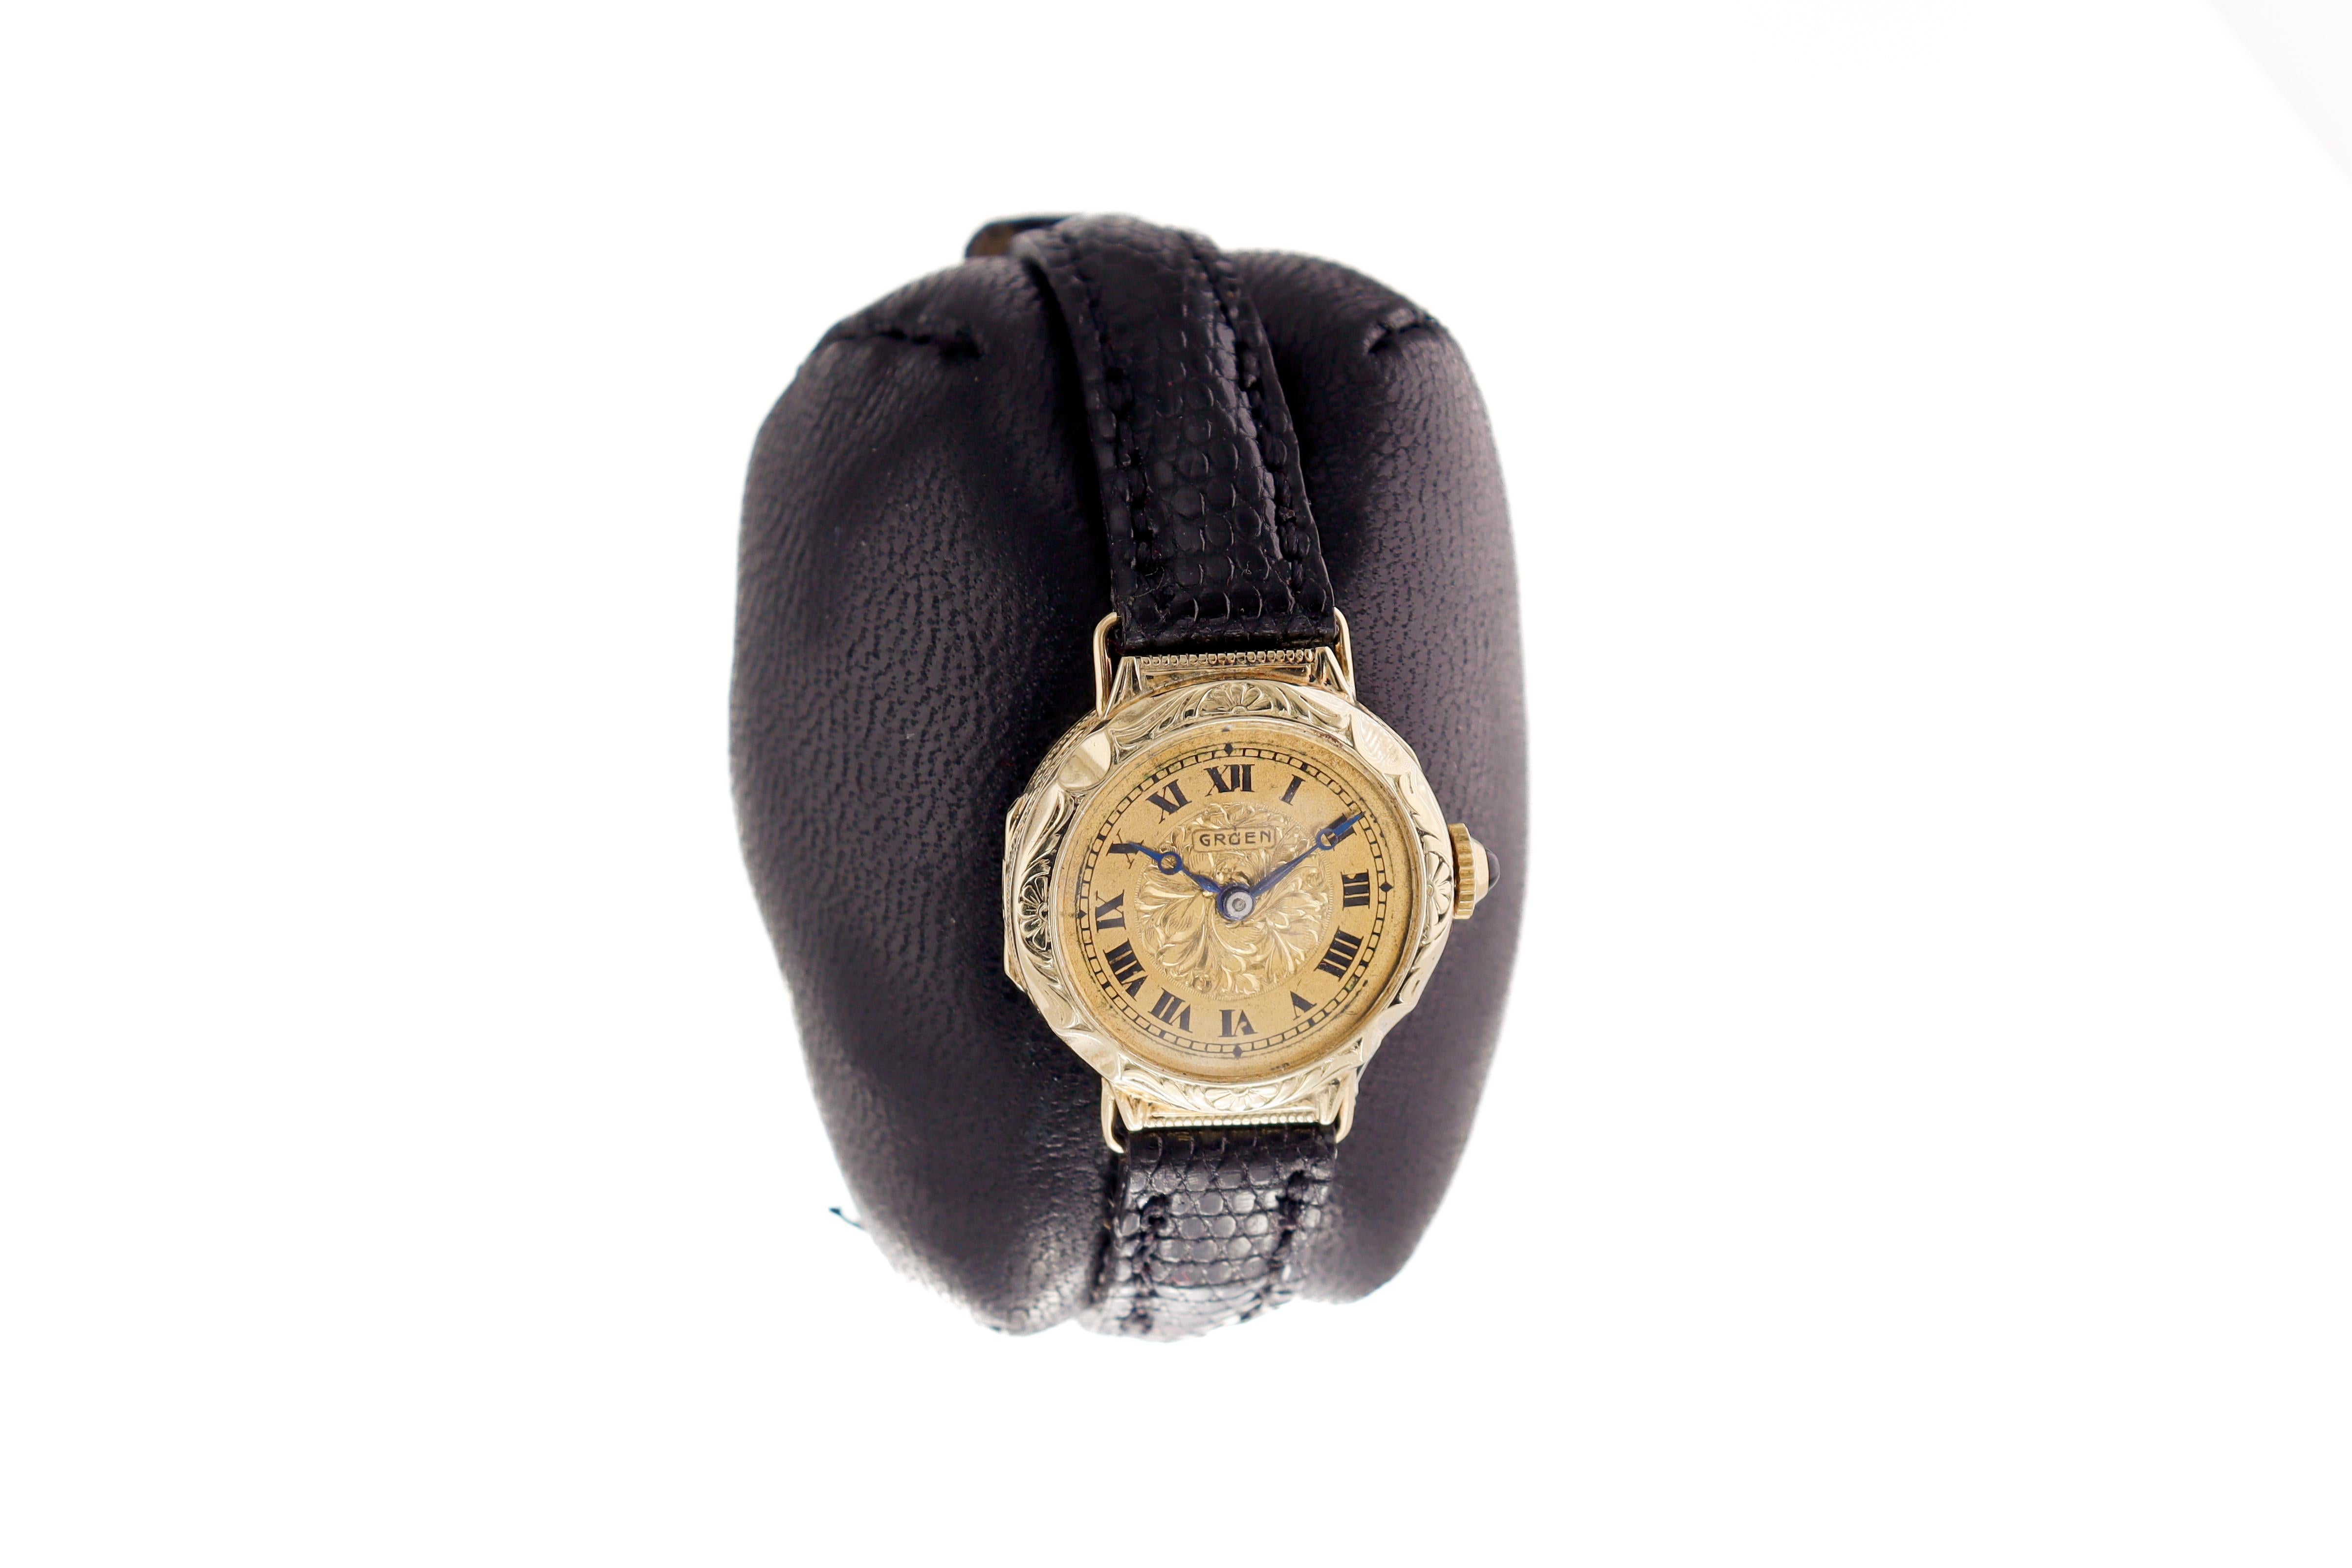 FABRIK / HAUS: Gruen Watch Company
STIL / REFERENZ: Art Deco
METALL / MATERIAL: 14Kt. Massiv Gold 
CIRCA / JAHR: 1920er Jahre
ABMESSUNGEN / GRÖSSE:  Länge 28mm X Durchmesser 22mm
UHRWERK / KALIBER: Handaufzug / 15 Jewels 
ZIFFERBLATT / ZEIGER: